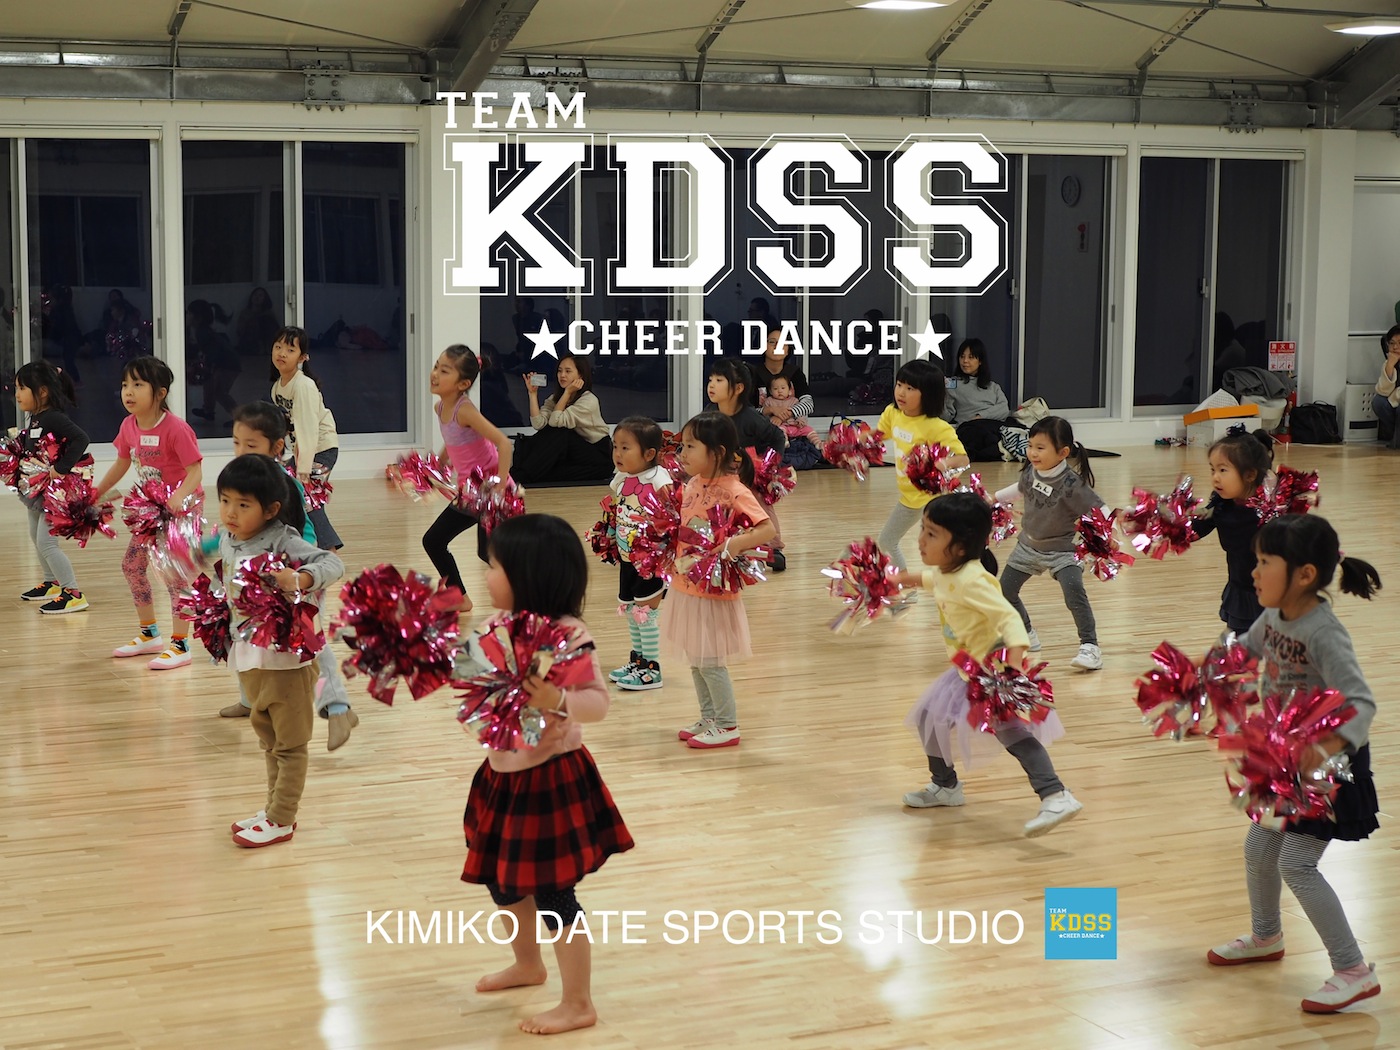 4月教室募集 チアダンスチーム Team Kdss Kids 幼児クラス募集 体験レッスン Kimiko Date Sports Studio